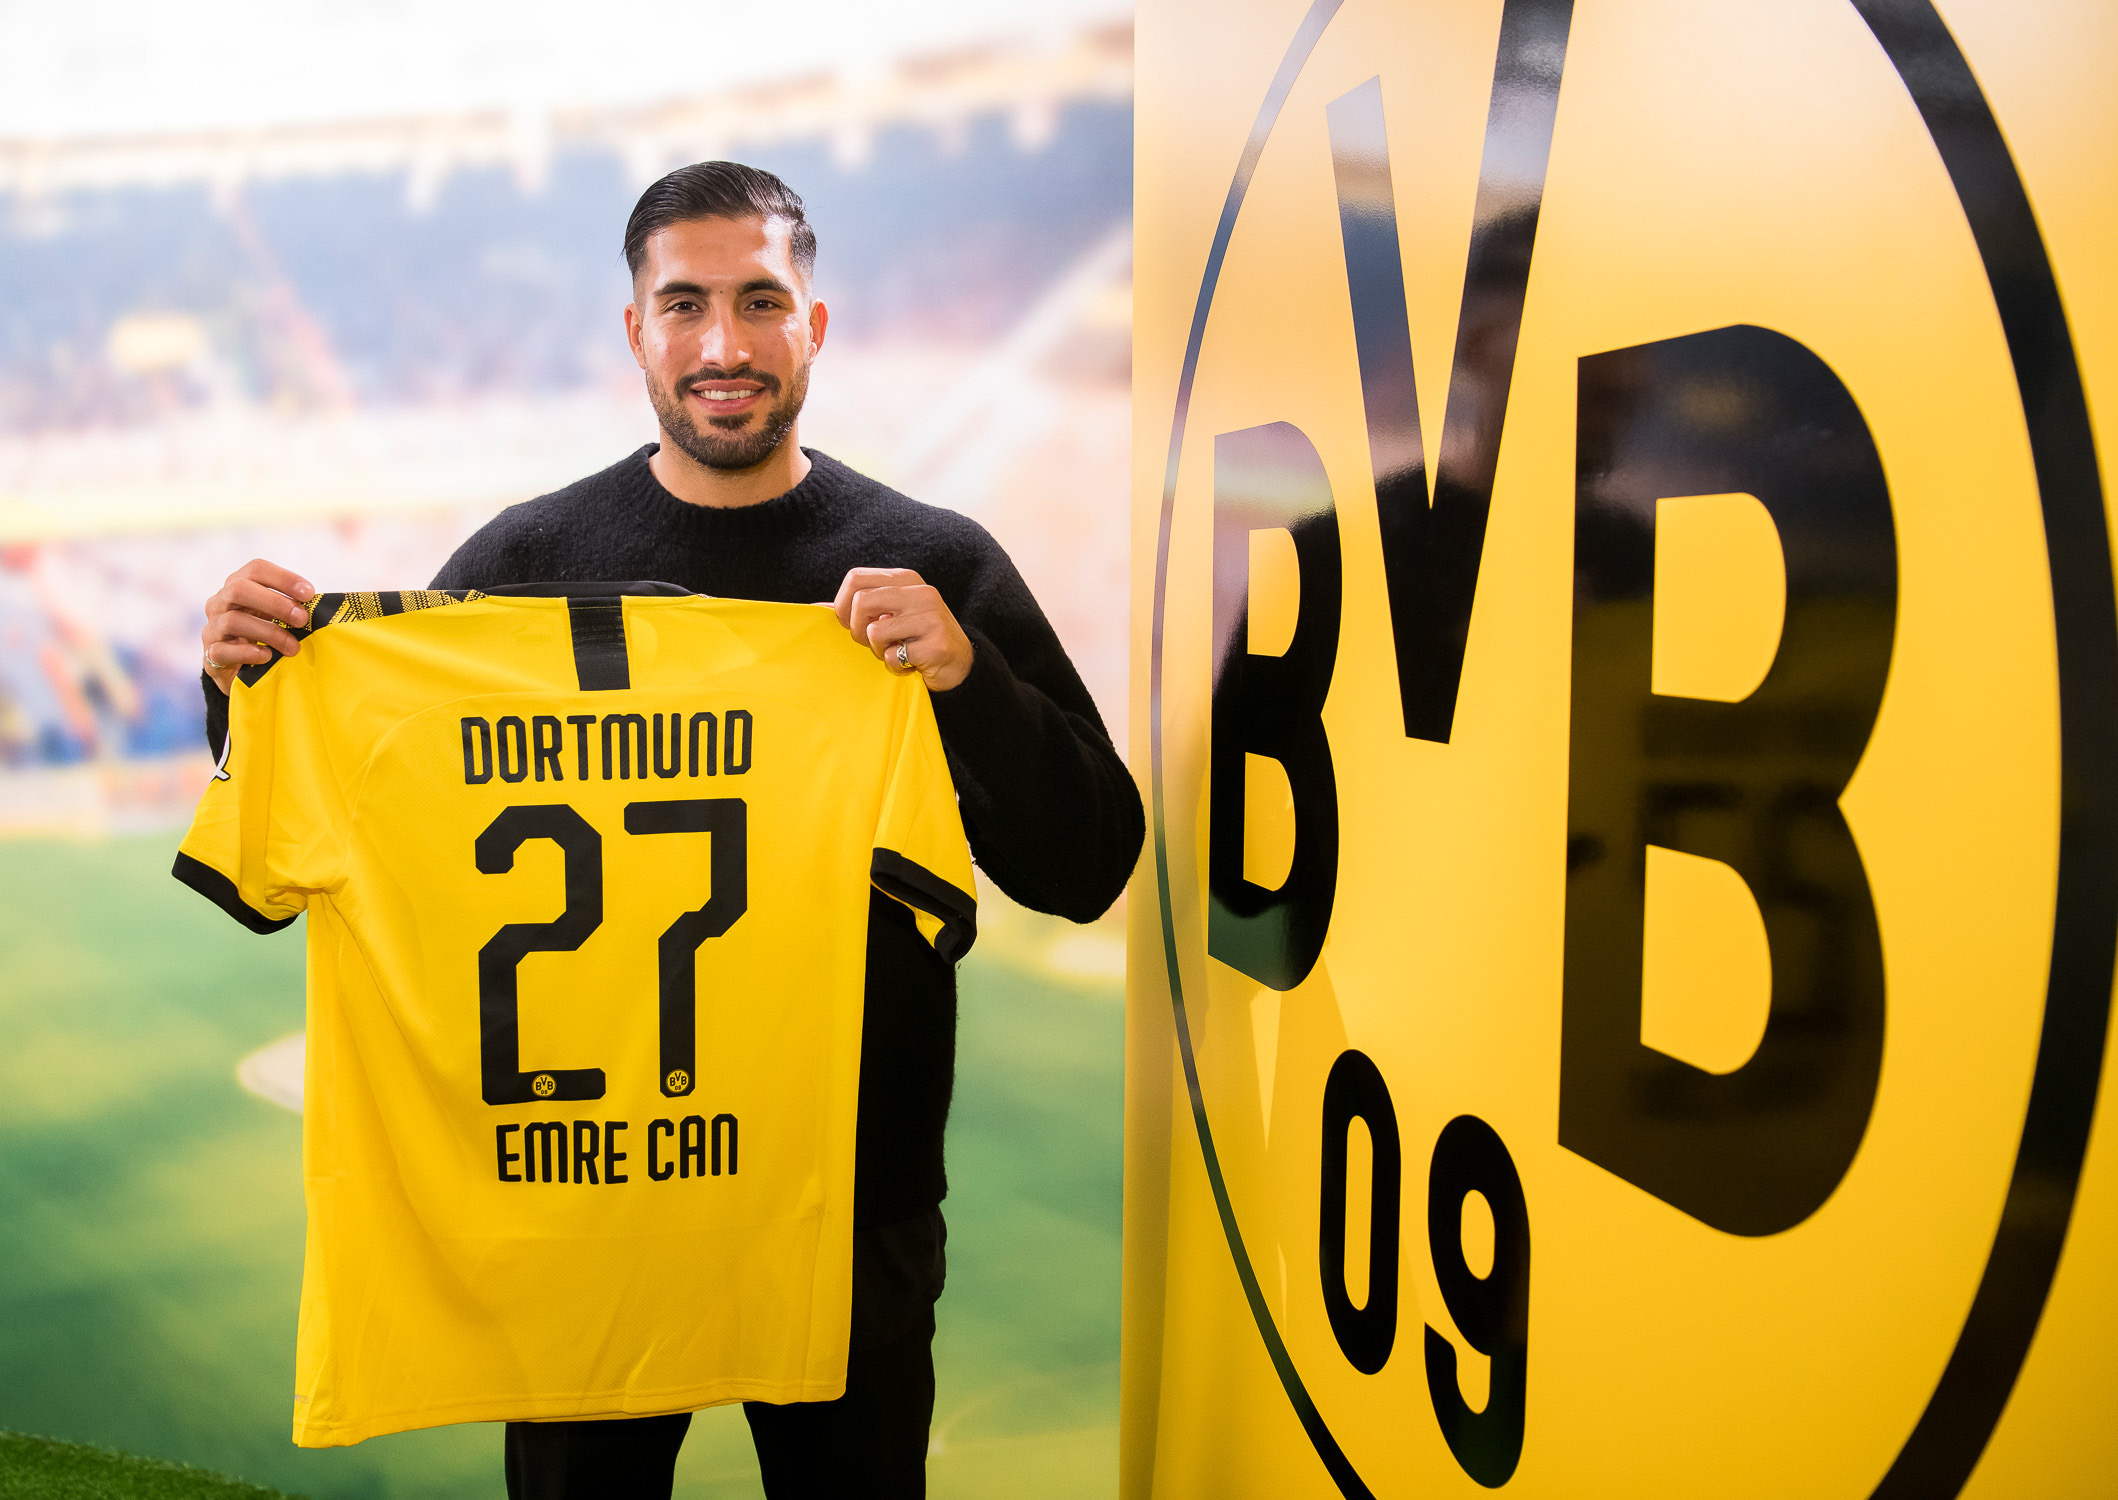 ESQUENTOU - O Borussia Dortmund está buscando uma reformulação no elenco e liberará Julian Brandt, Emre Can, Schulz e Hazard caso recebam propostas a altura, de acordo com o Sport1.